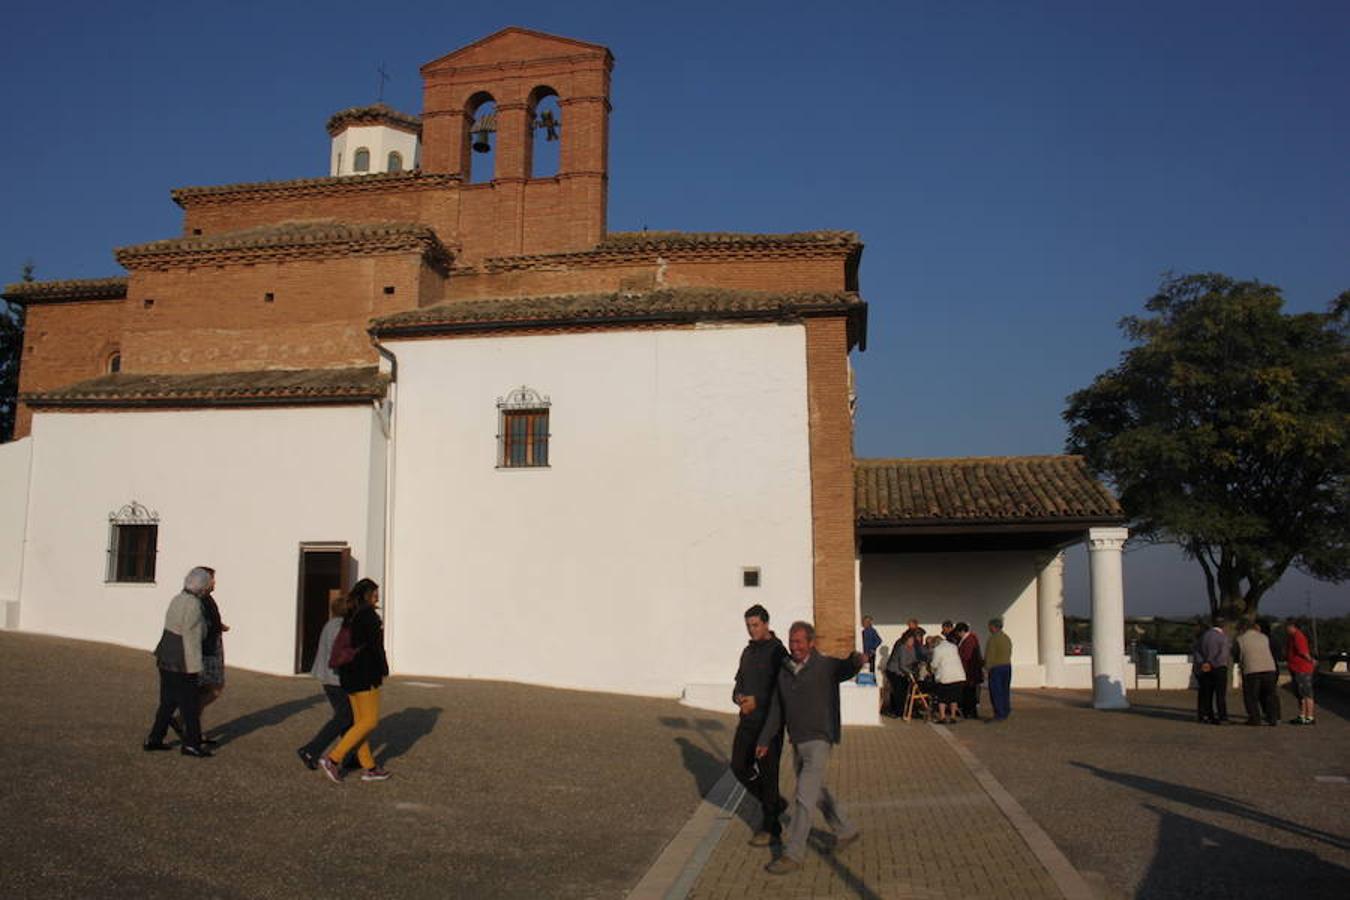 Los vecinos de Alfaro cumplieron, como dada 12 de octubre, con la tradicional romería a la ermita del Pilar, ubicada a unos tres kilómetros del casco urbano.